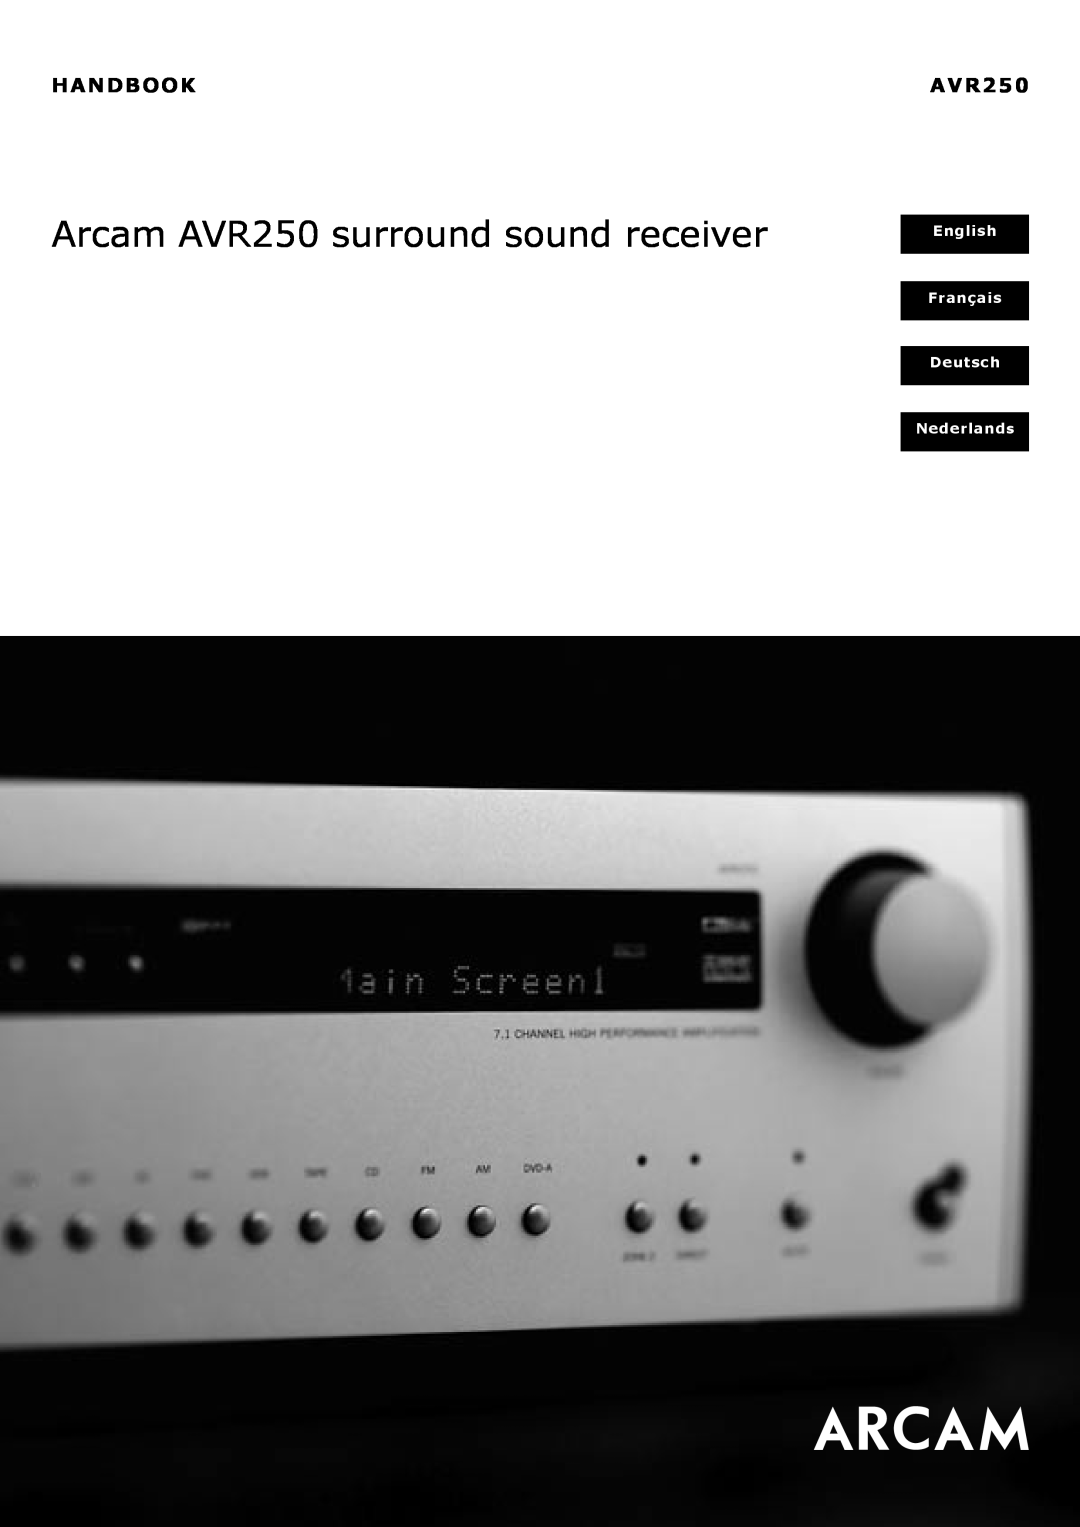 Arcam manual Handbook, Arcam AVR250 surround sound receiver, English, Français Deutsch Nederlands 